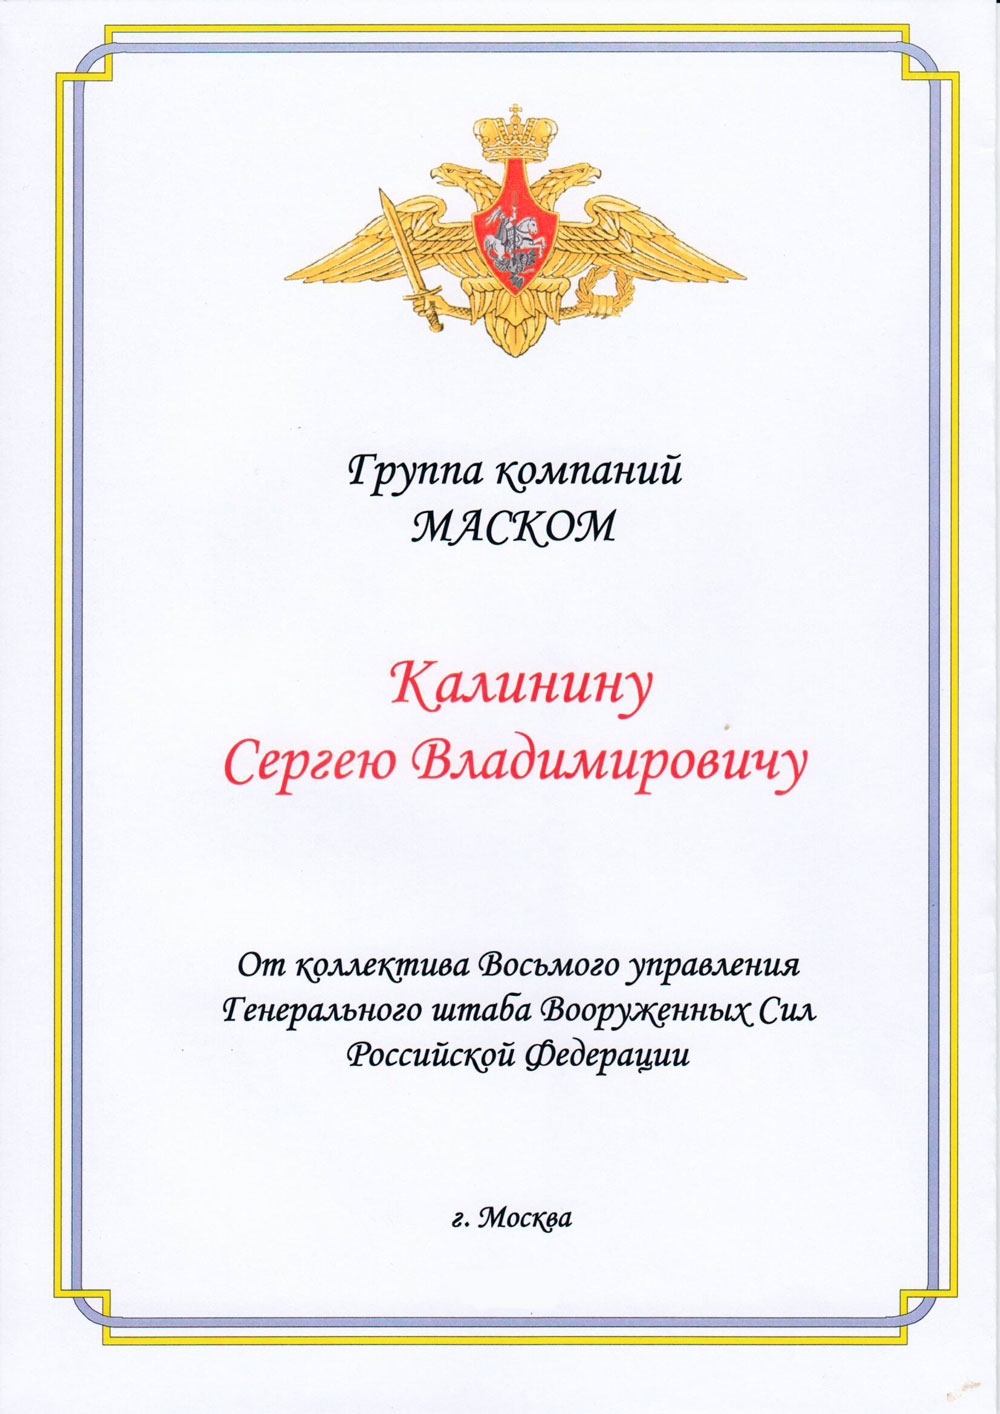 Восьмое управление Генерального штаба Вооруженных Сил Российской Федерации